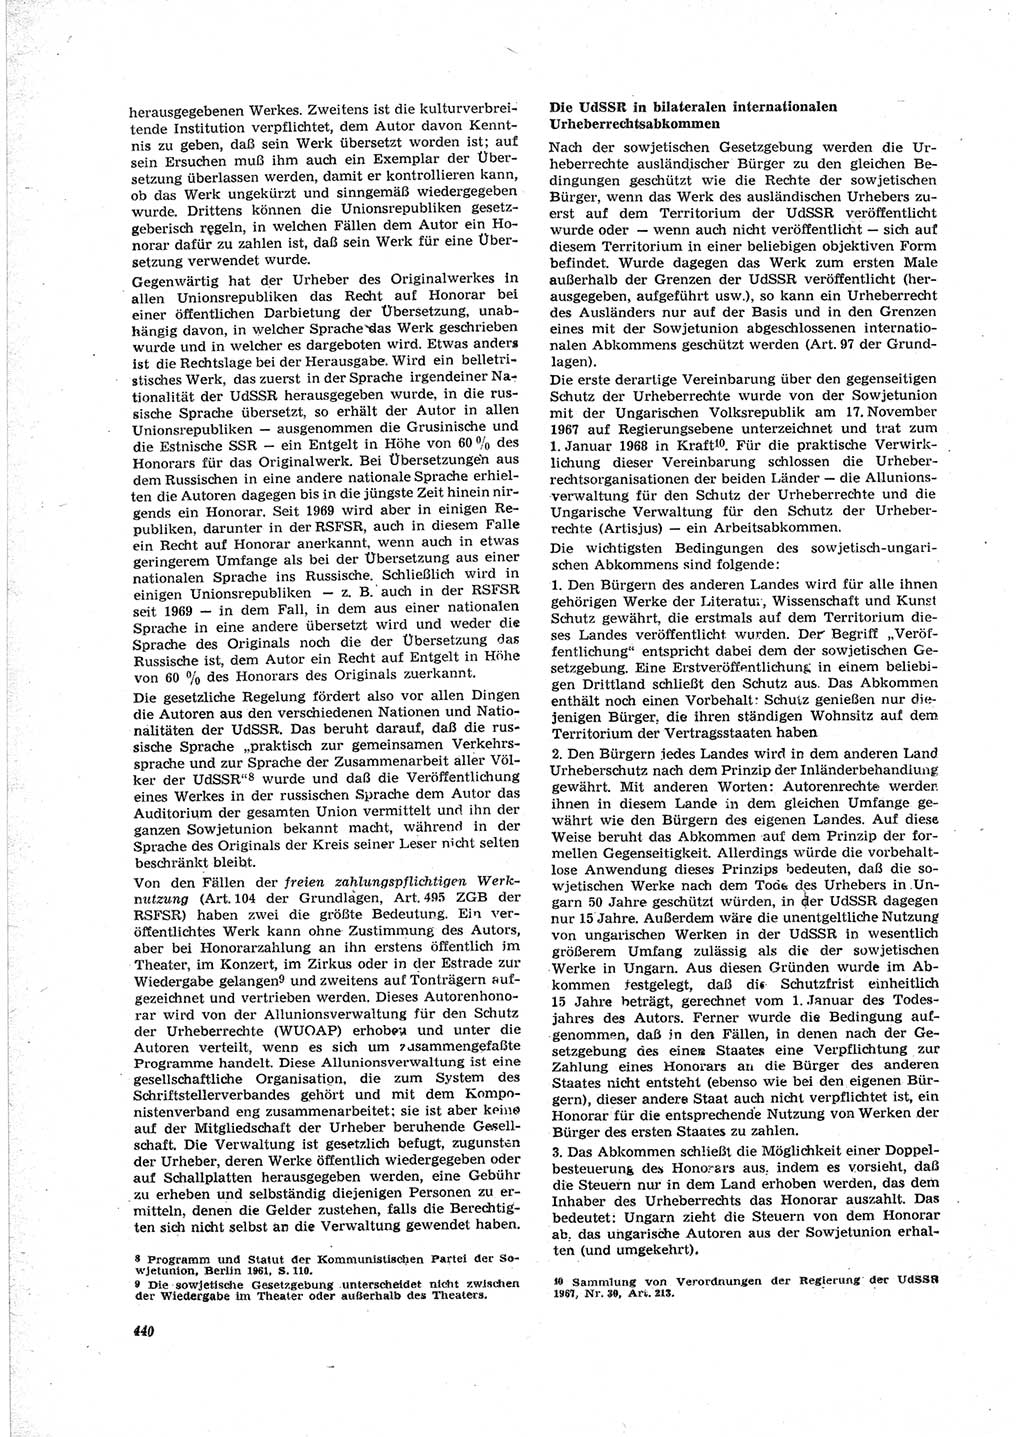 Neue Justiz (NJ), Zeitschrift für Recht und Rechtswissenschaft [Deutsche Demokratische Republik (DDR)], 23. Jahrgang 1969, Seite 440 (NJ DDR 1969, S. 440)